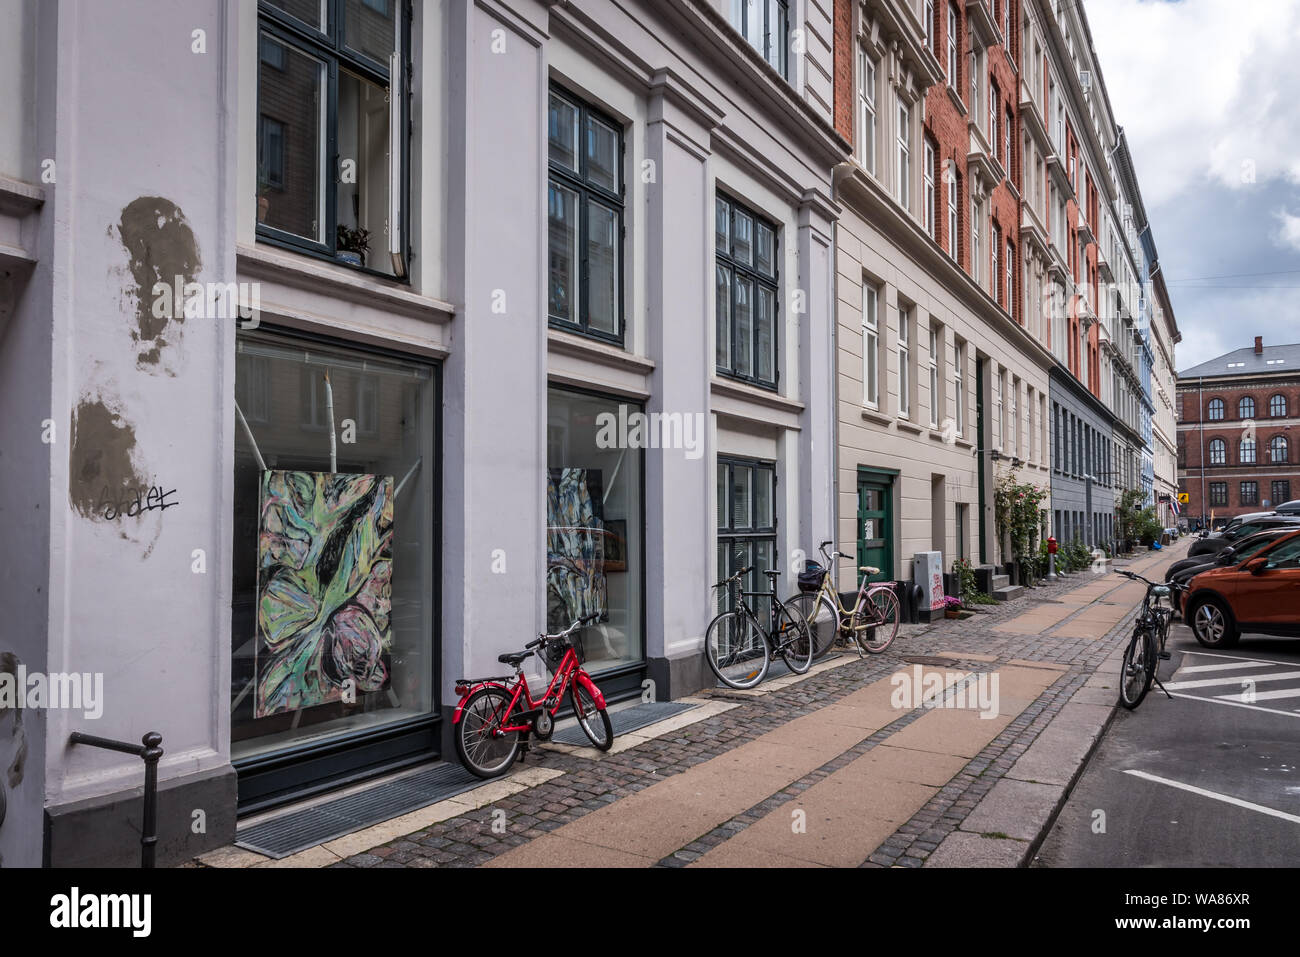 Art Gallery und ein rotes Fahrrad auf dem Bürgersteig, eine berühmte Galerie Straße in Kopenhagen, 16. August 2019 Stockfoto